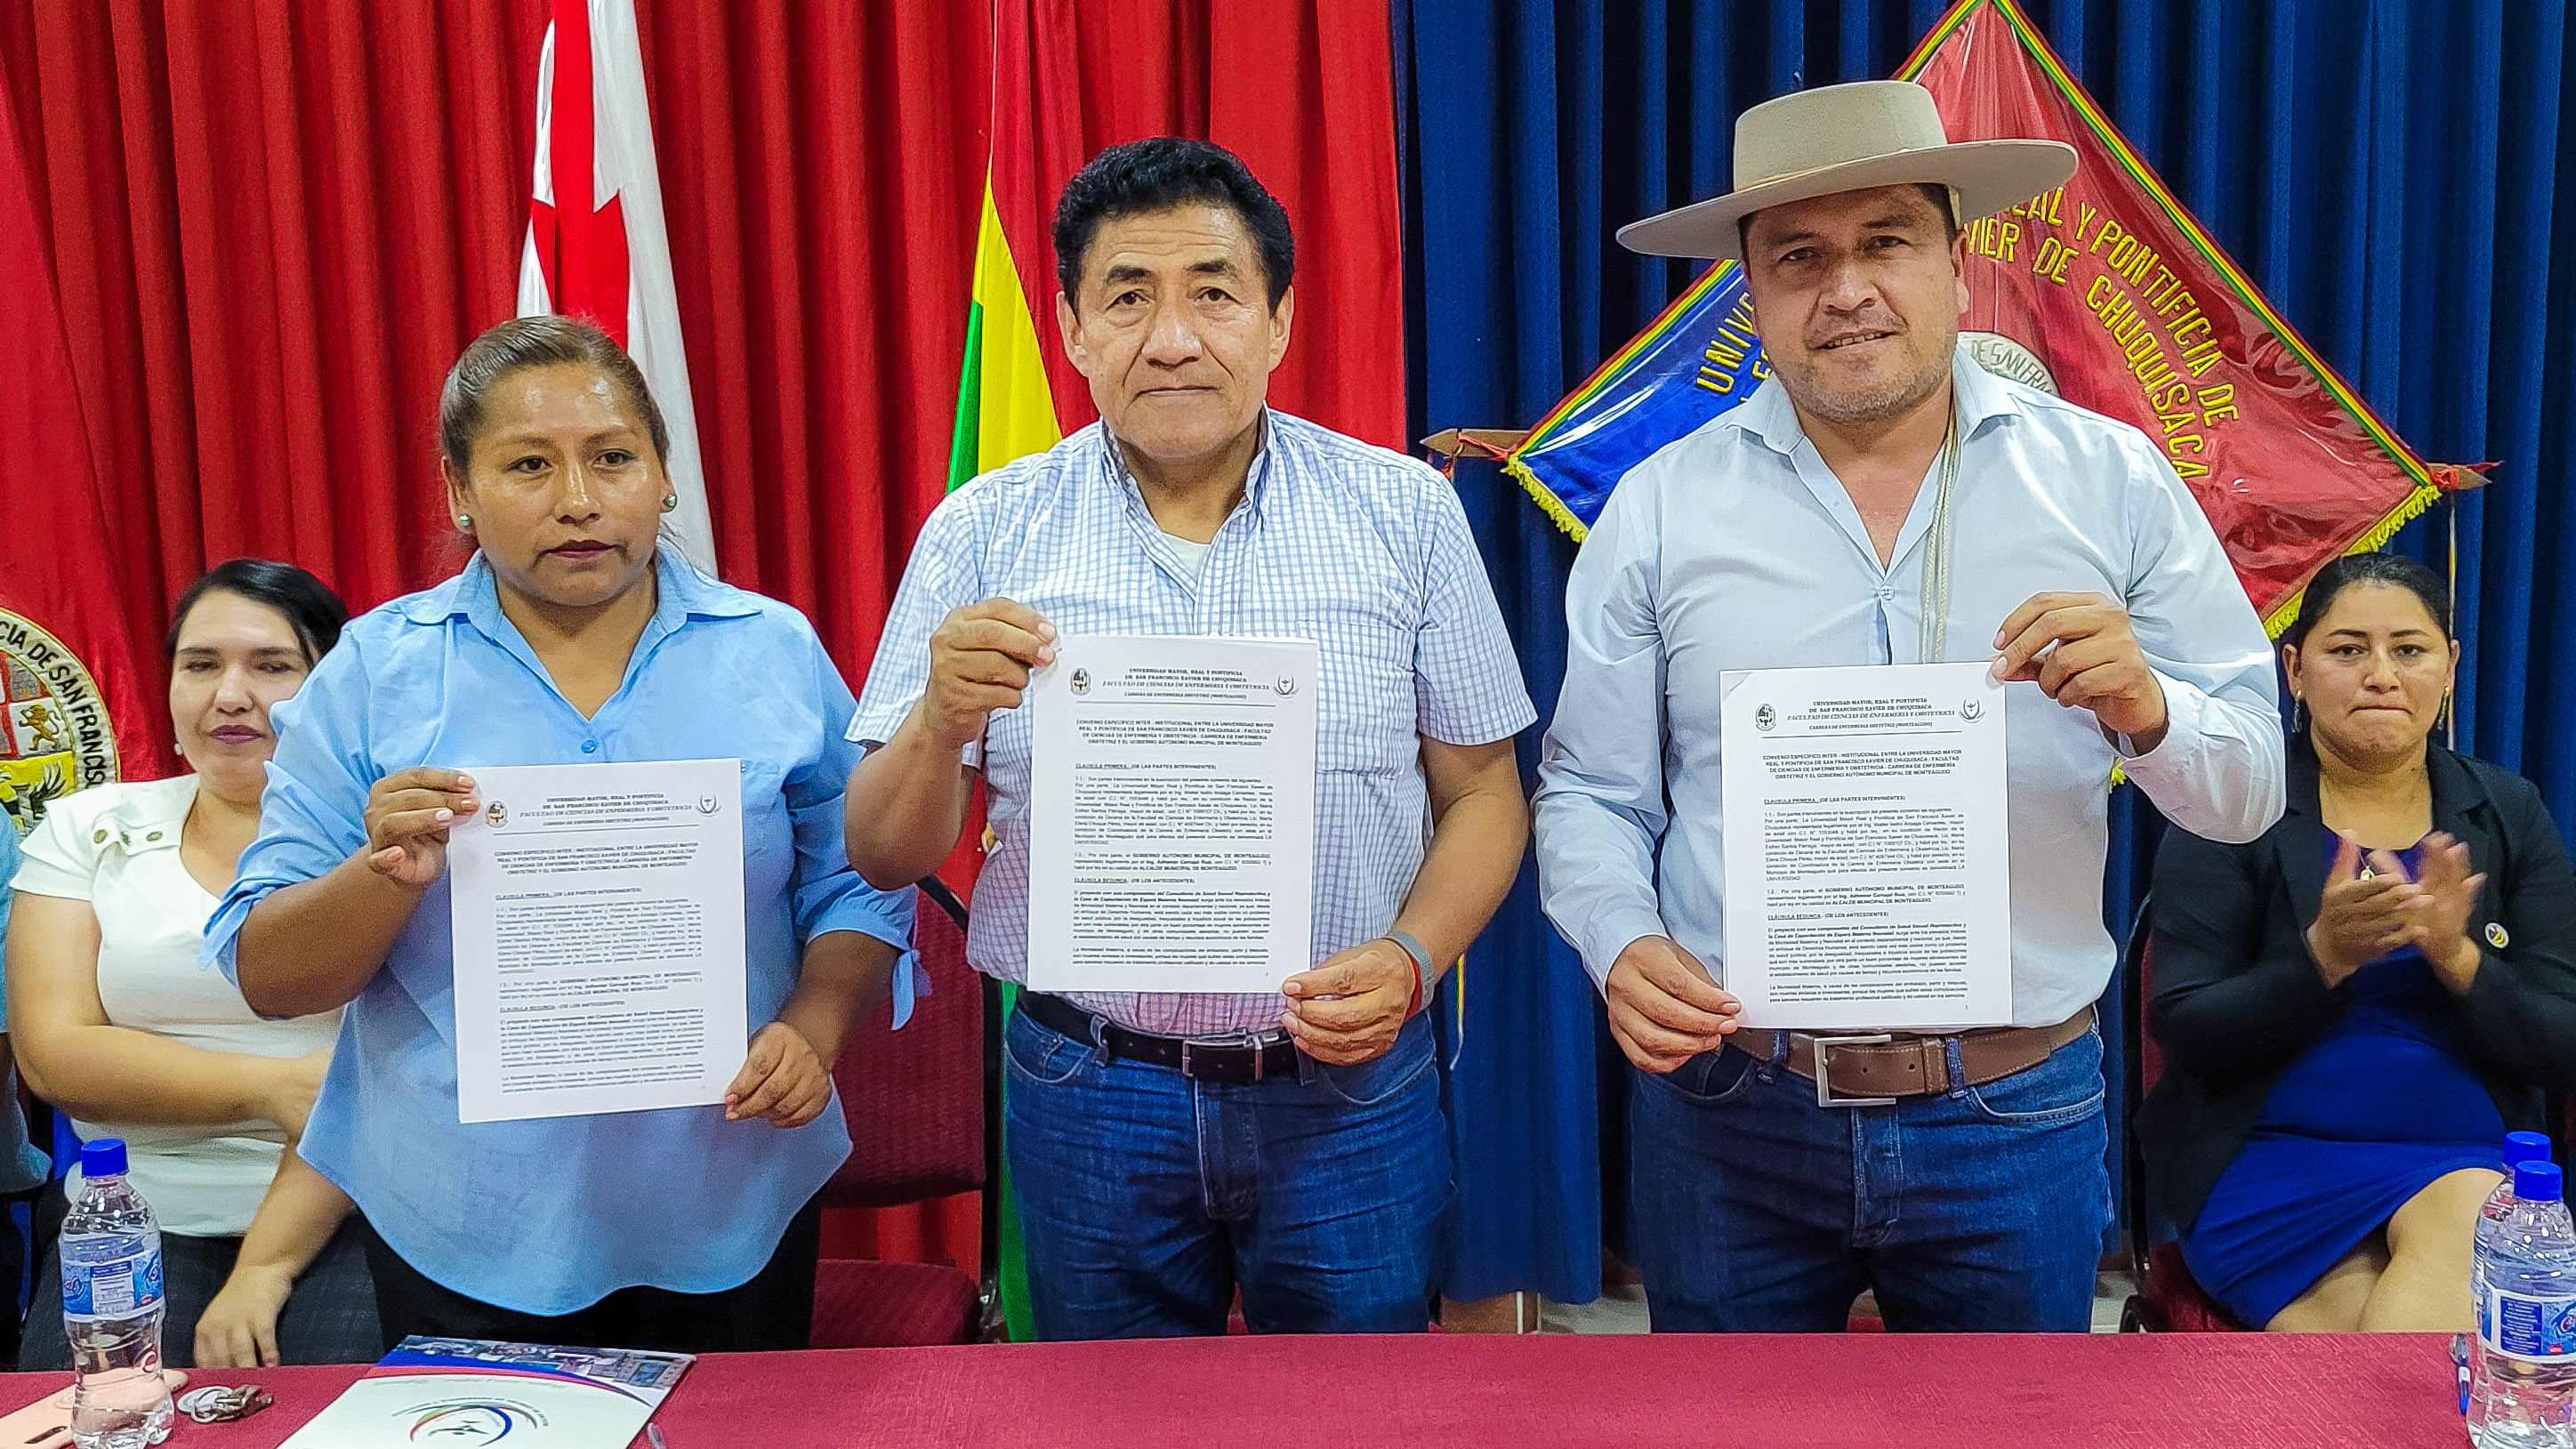 La USFX firmó un convenio con el municipio de Monteagudo para que los estudiantes de Enfermería realicen sus prácticas académicas